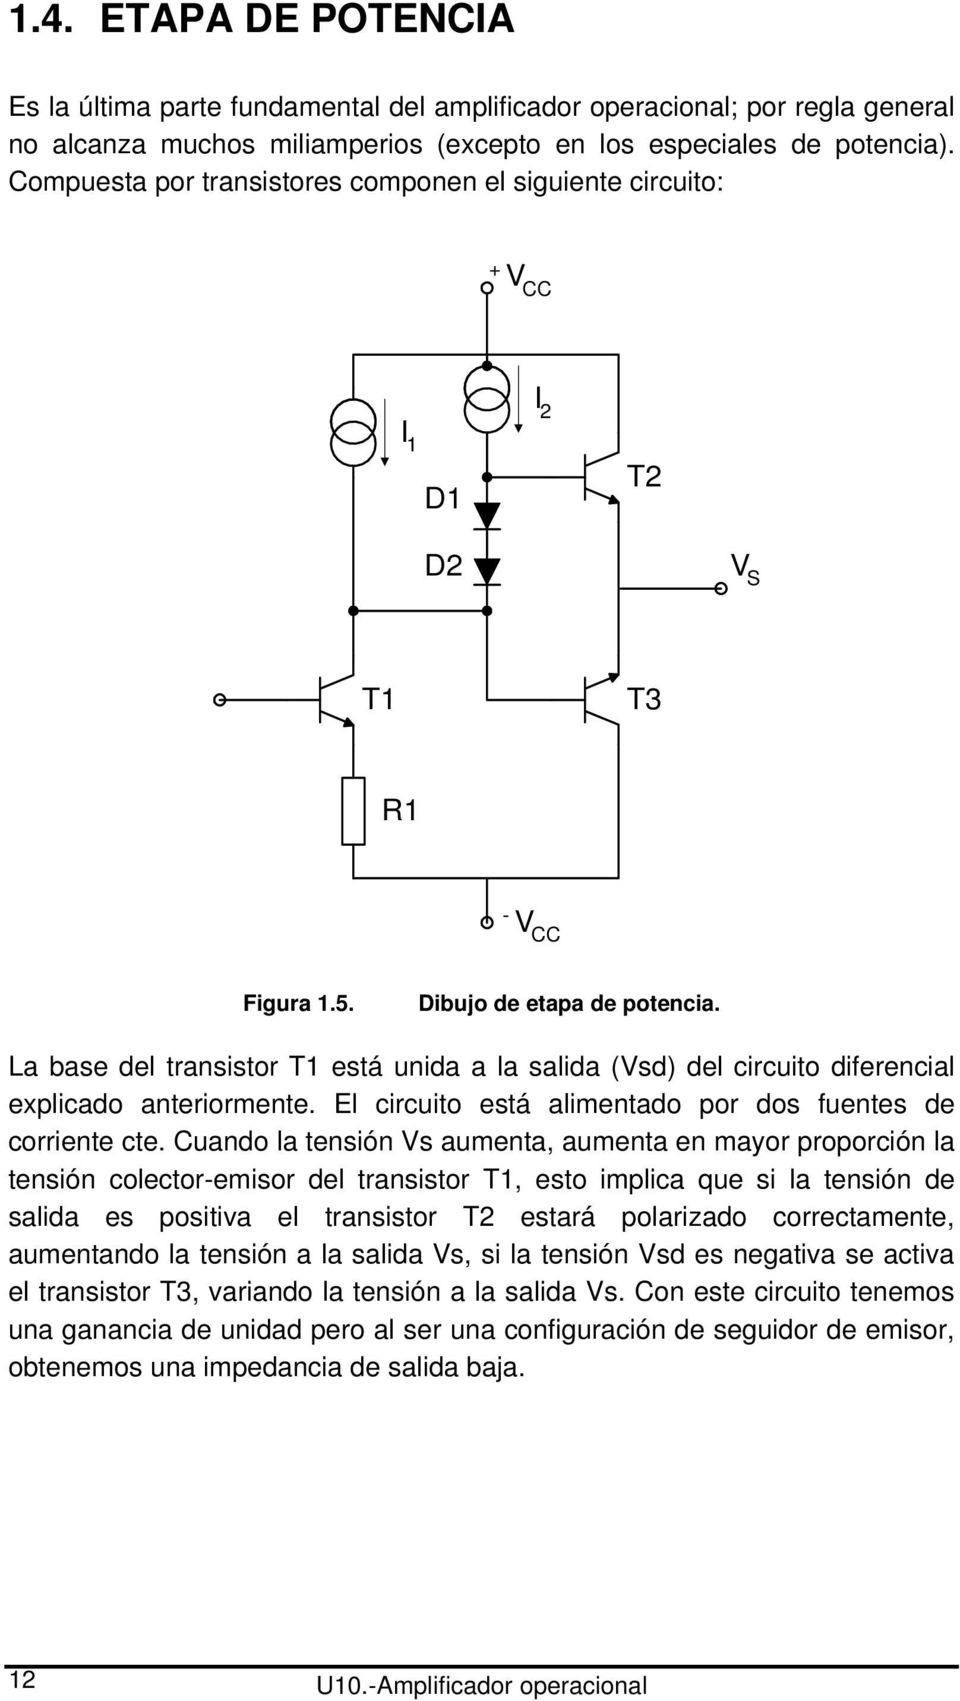 La base del transistor T1 está unida a la salida (Vsd) del circuito diferencial explicado anteriormente. El circuito está alimentado por dos fuentes de corriente cte.